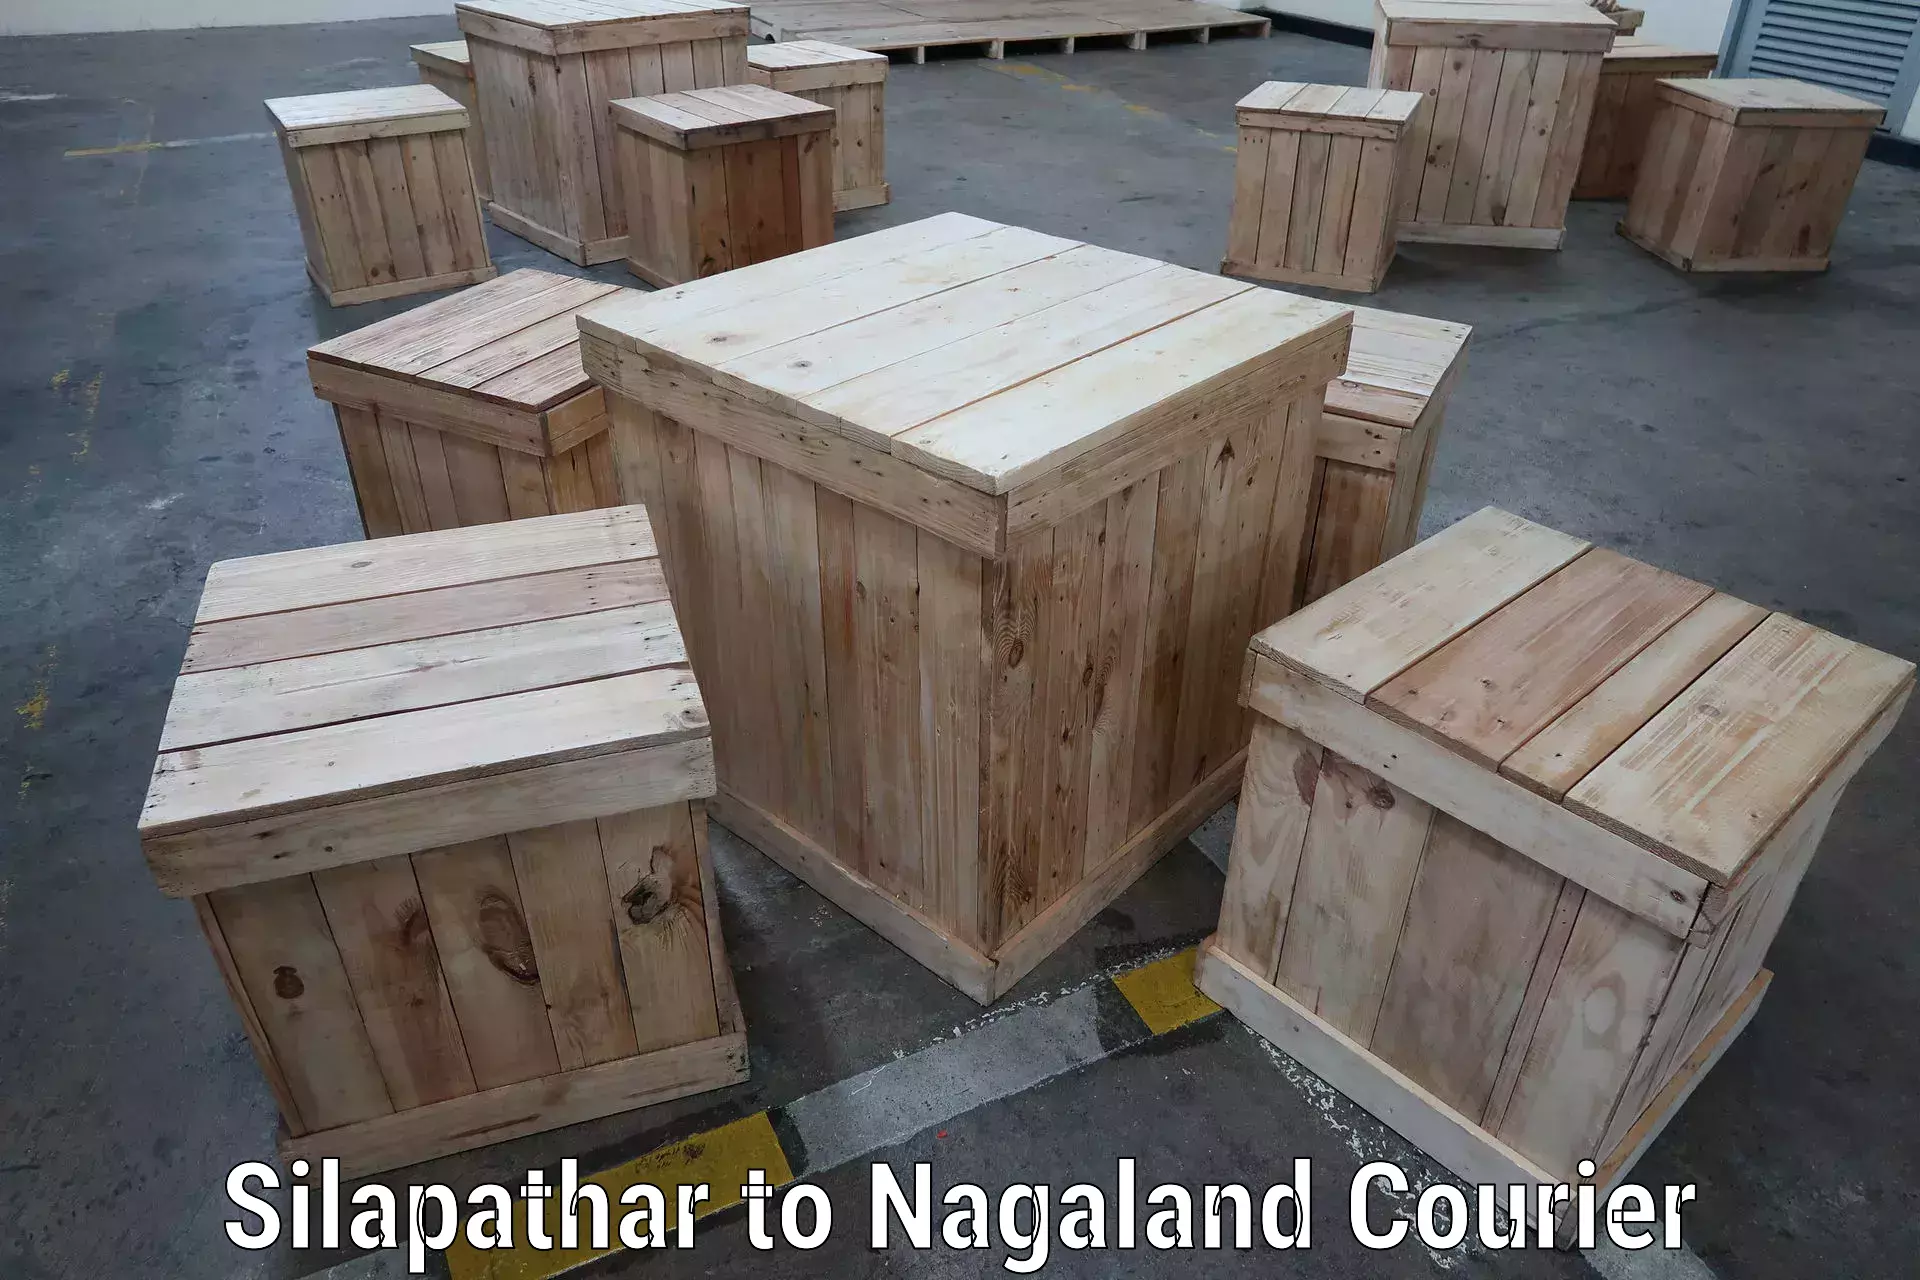 Express logistics service Silapathar to NIT Nagaland